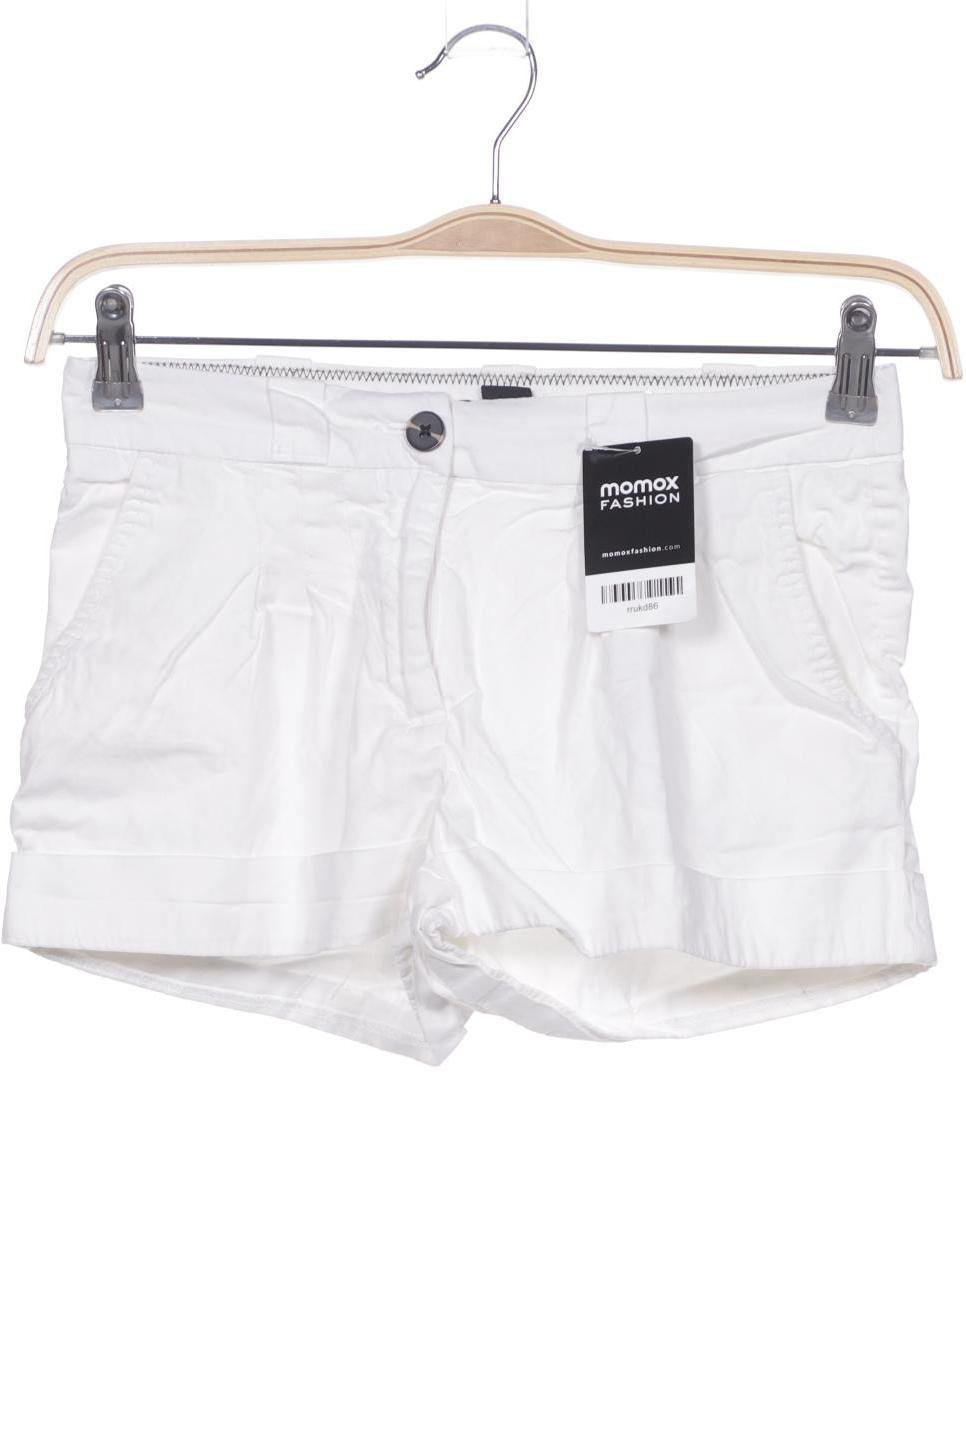 H&M Damen Shorts, weiß von H&M